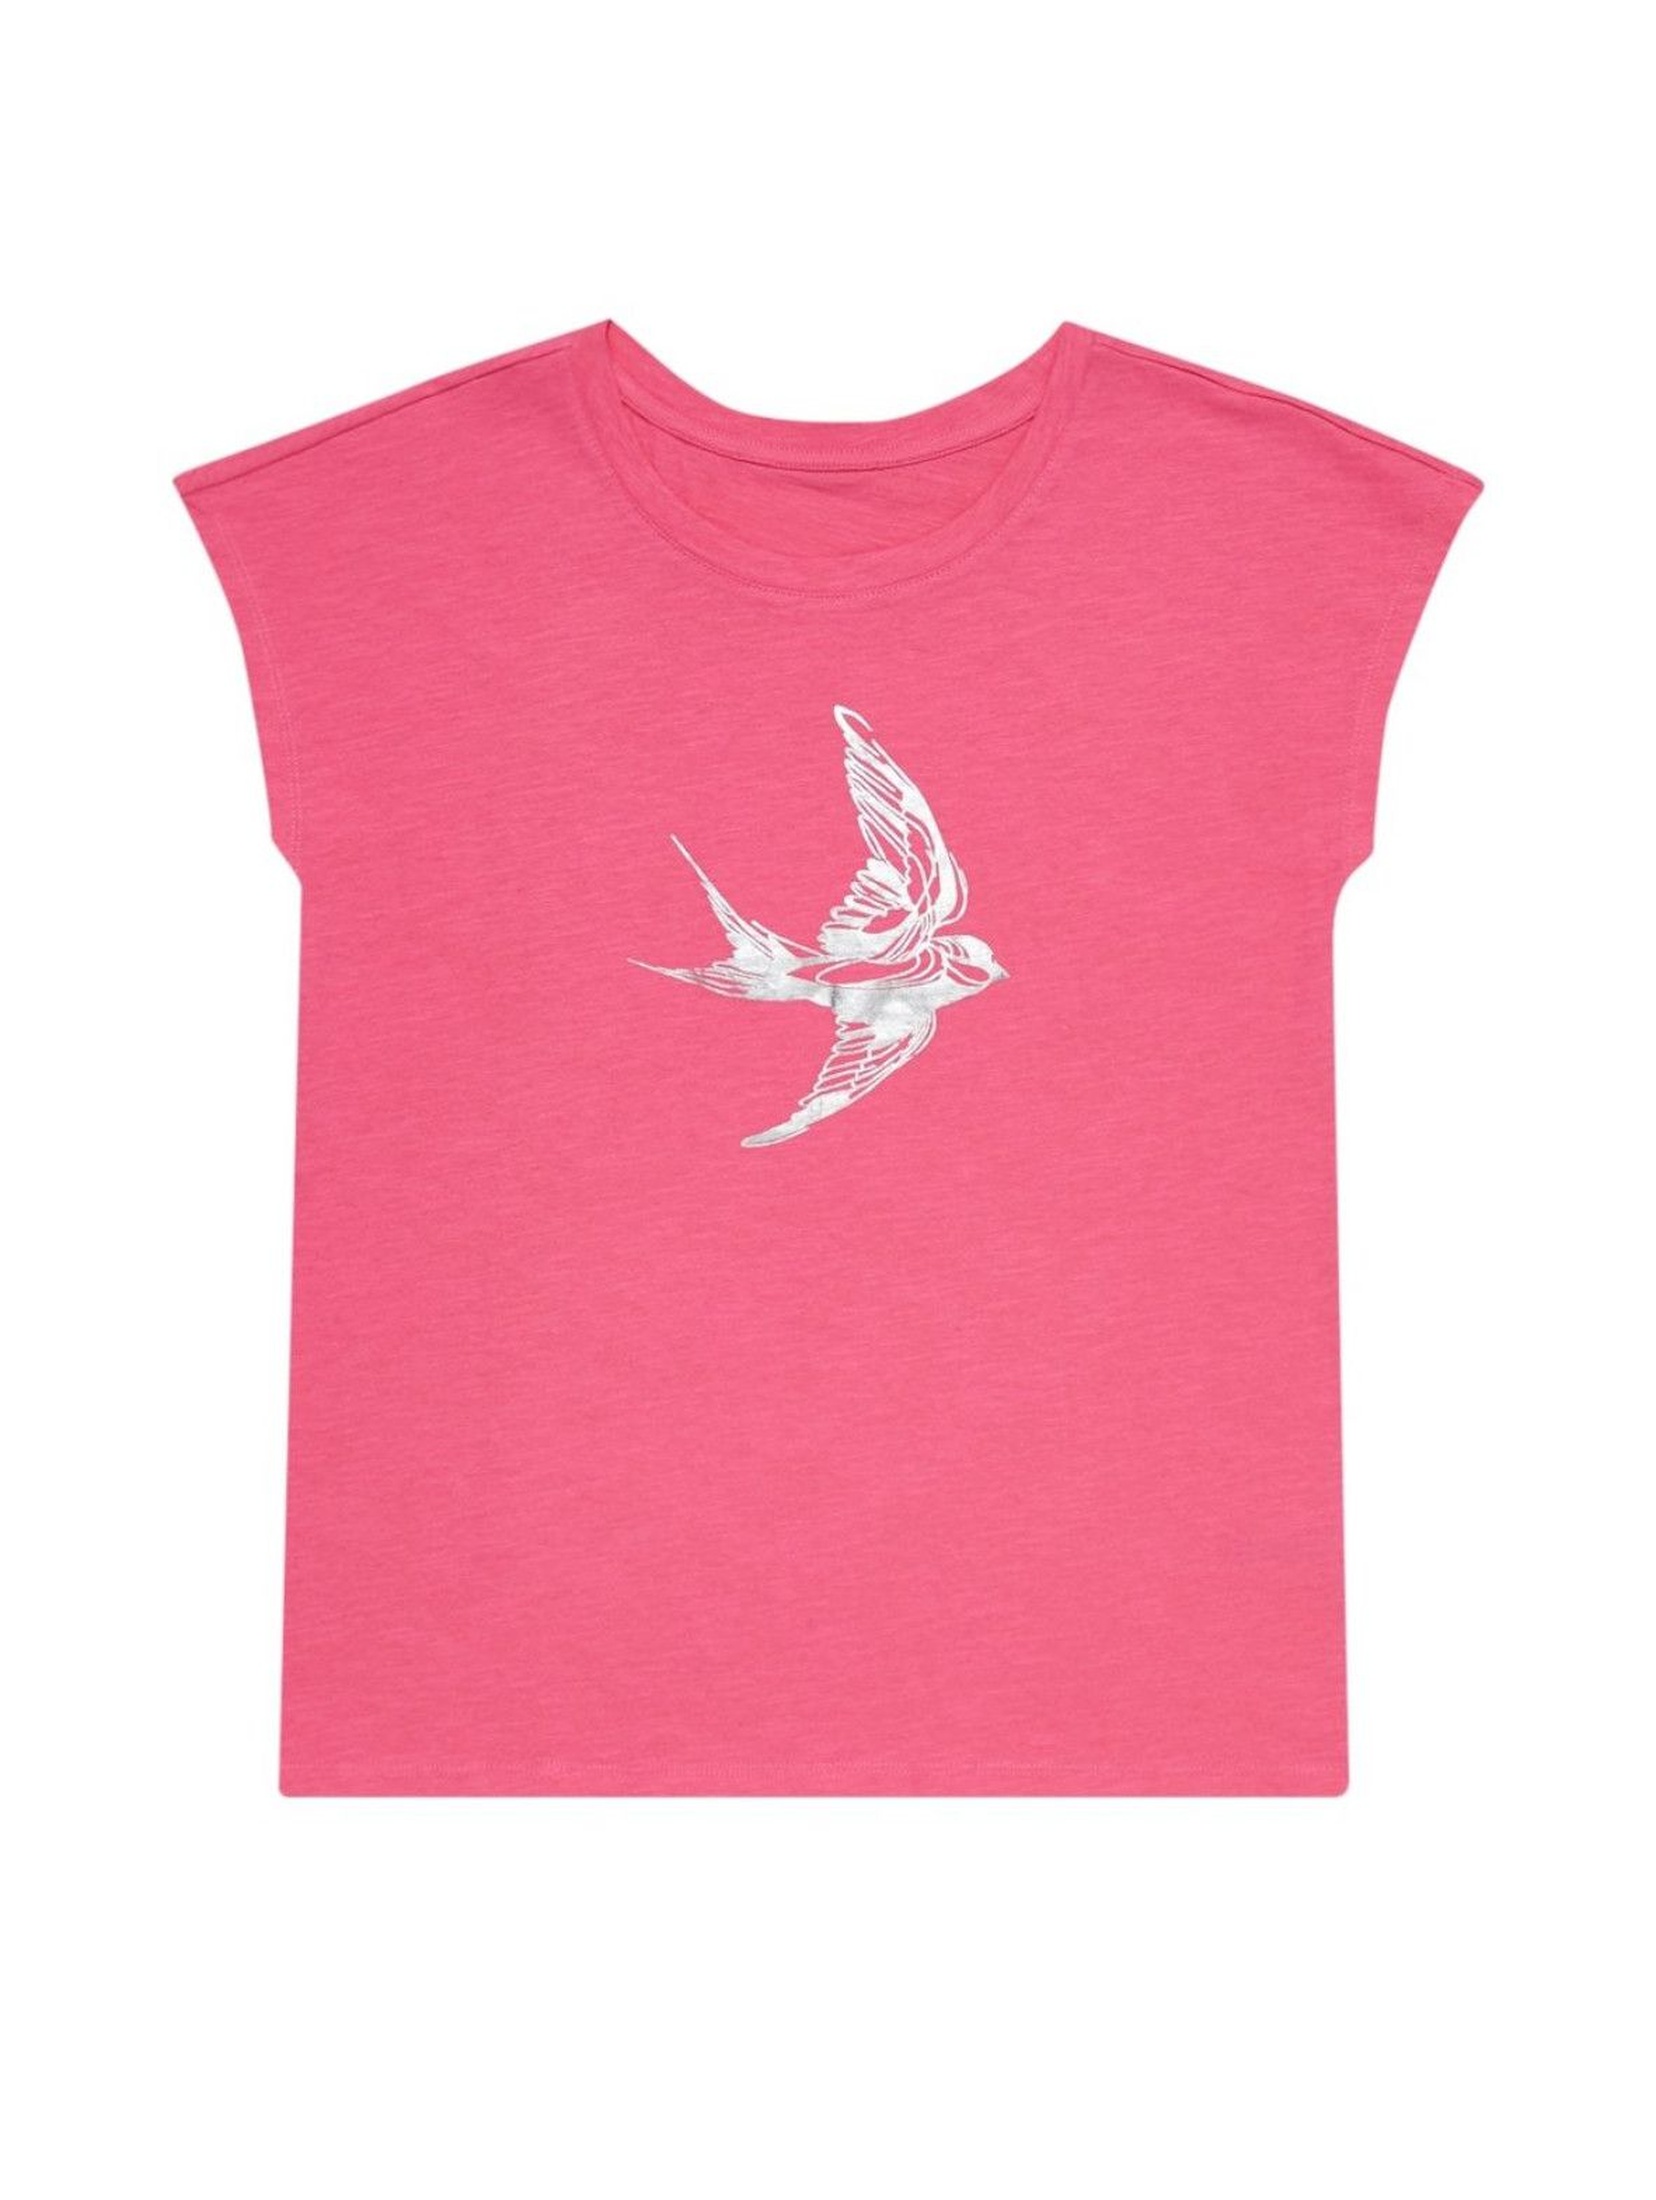 Bawełniany różowy T-shirt damski